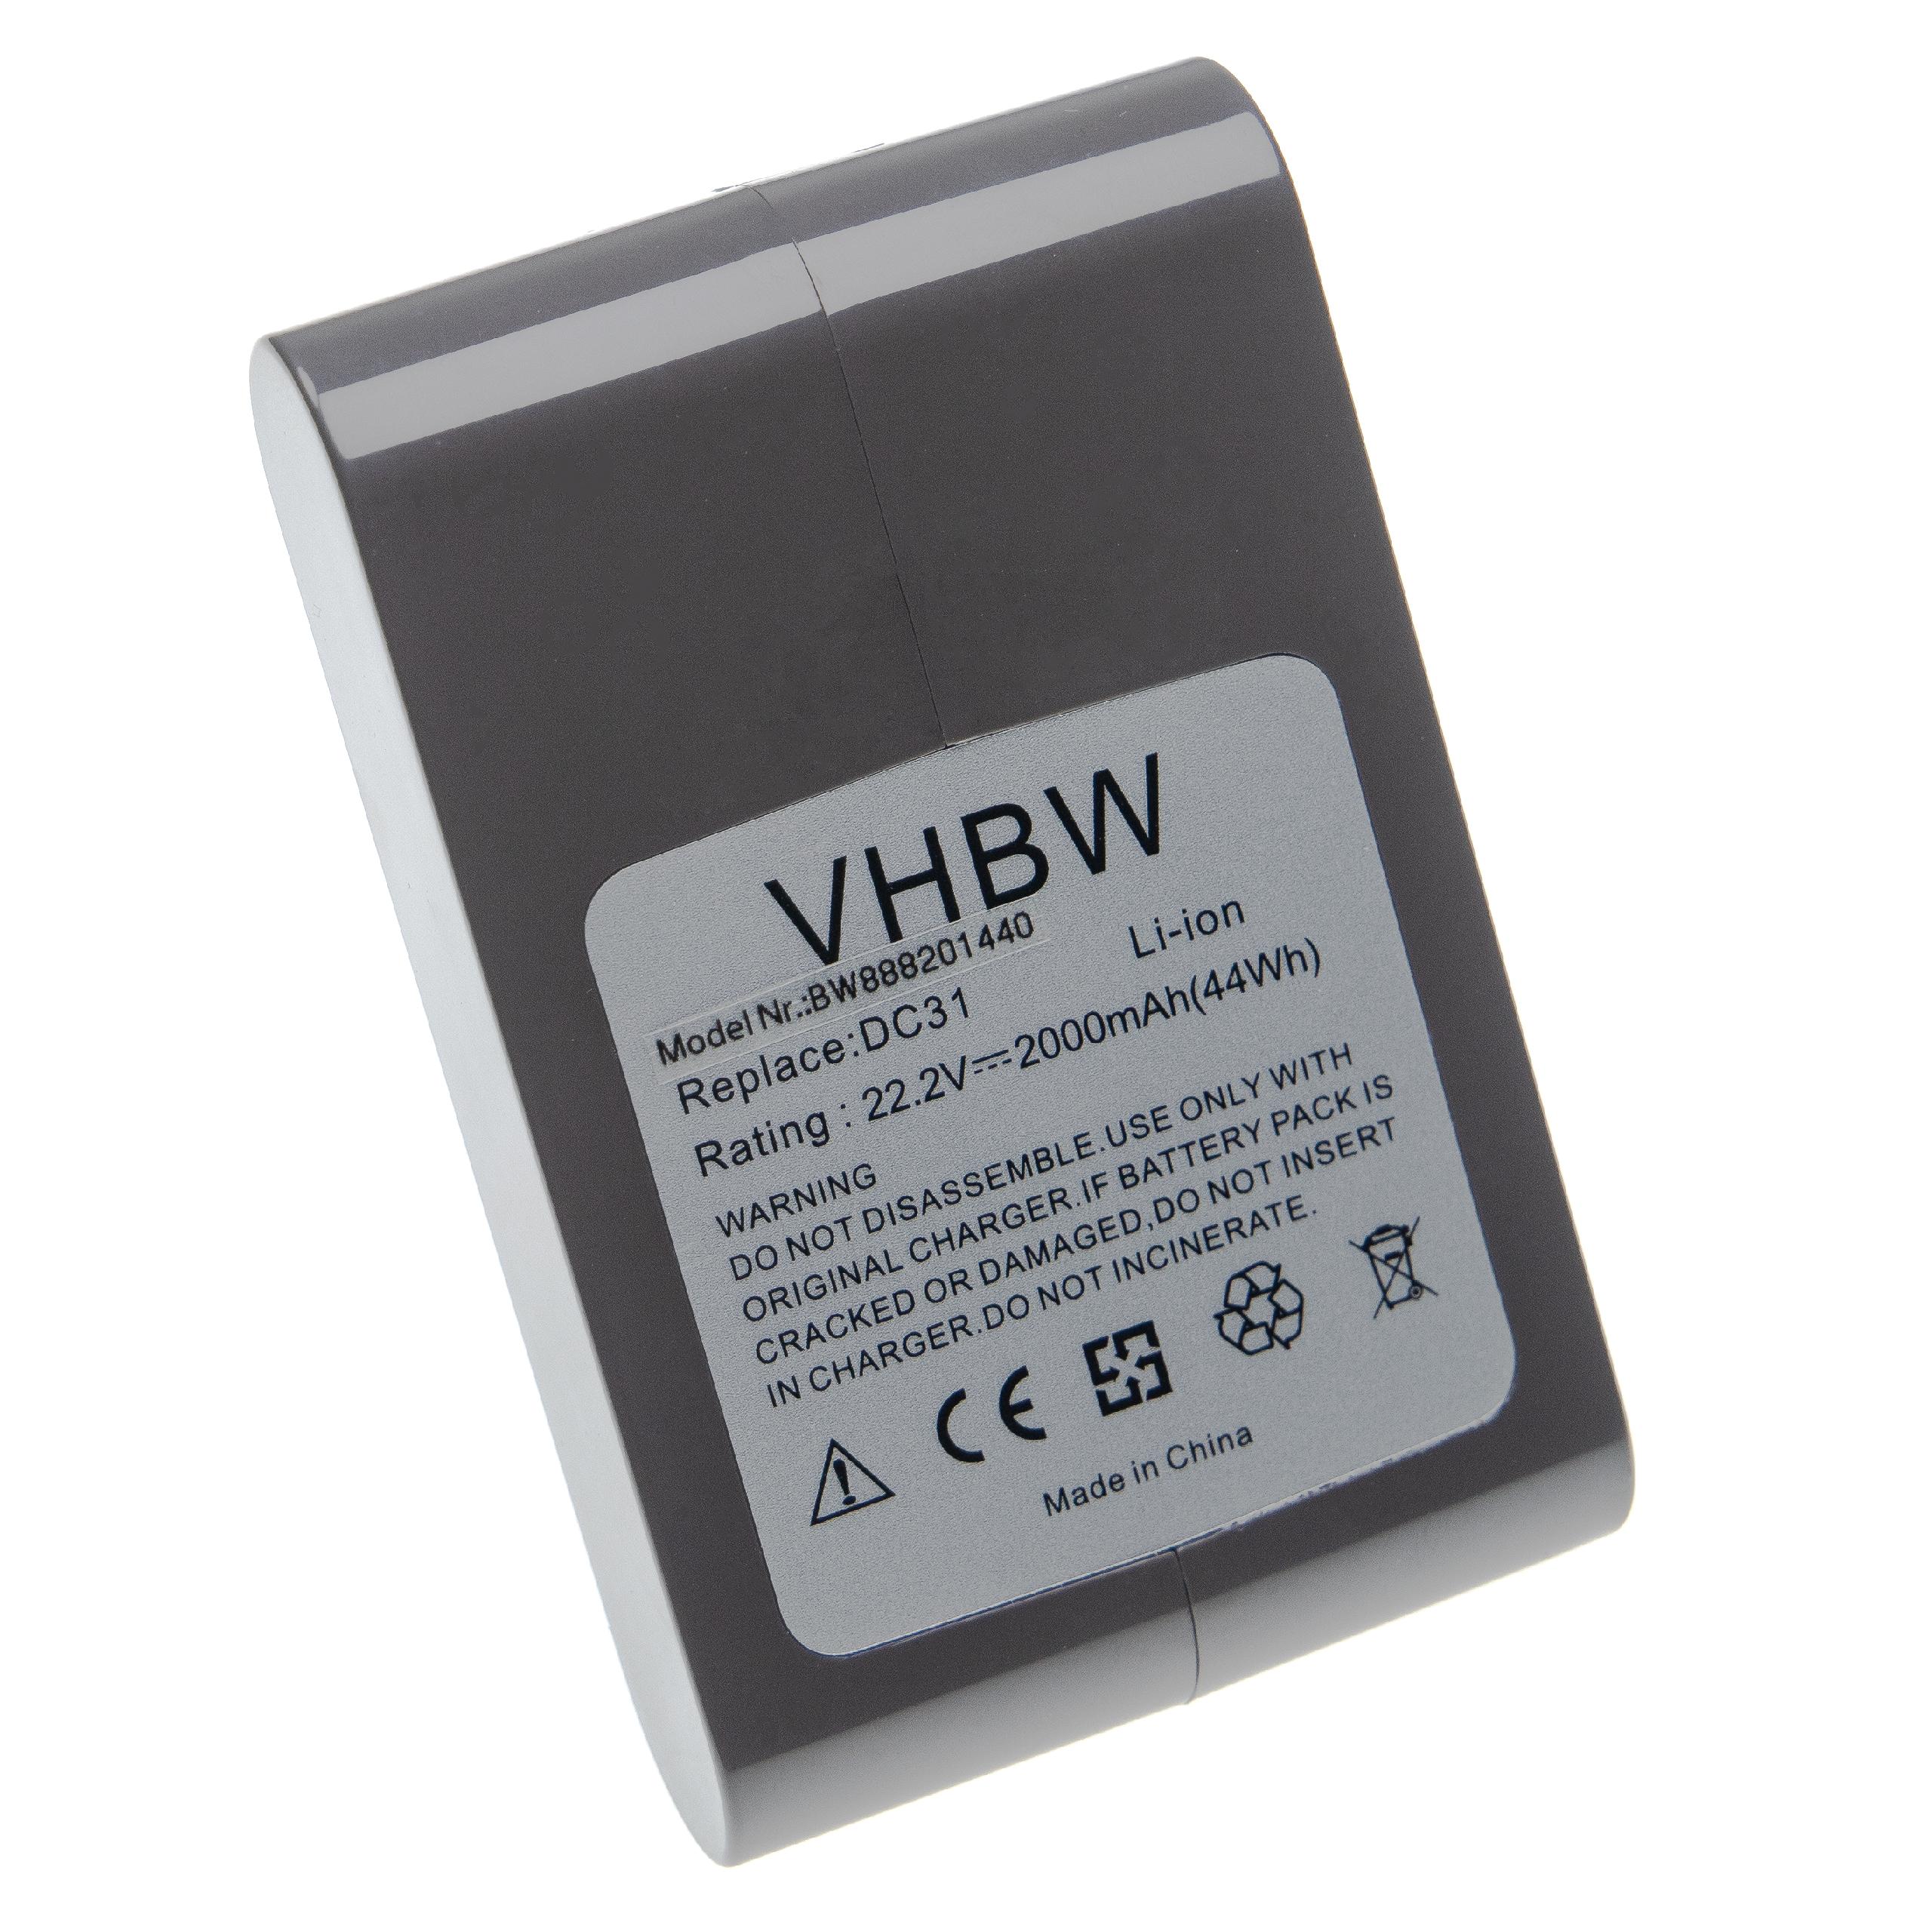 Batterie remplace Dyson 17083-5010, 17083-3009, 17083-3511 pour aspirateur - 2000mAh 22,2V Li-ion, gris